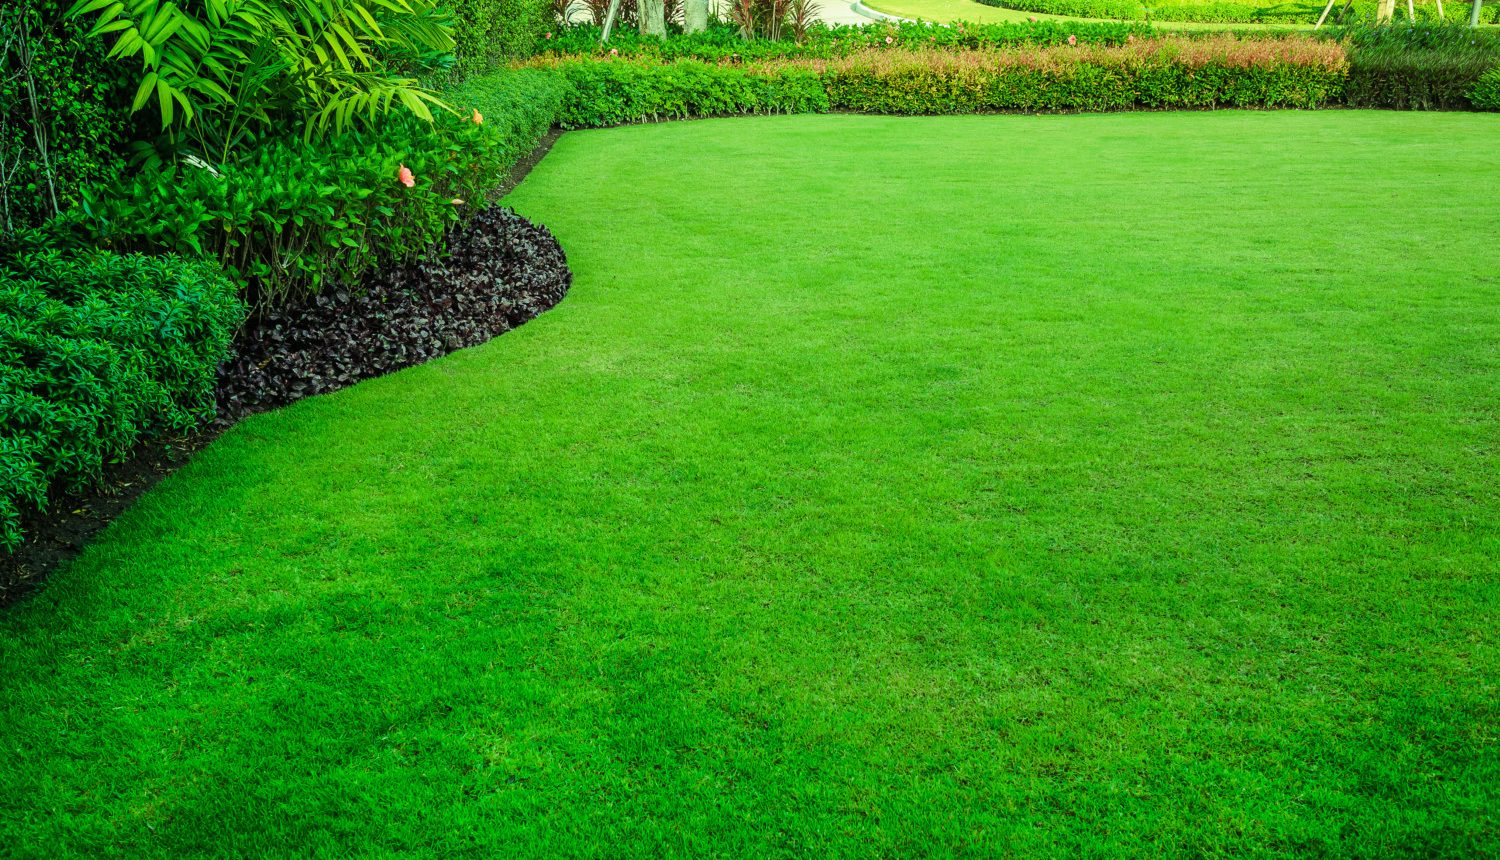 Green Grass Lawn Treatments